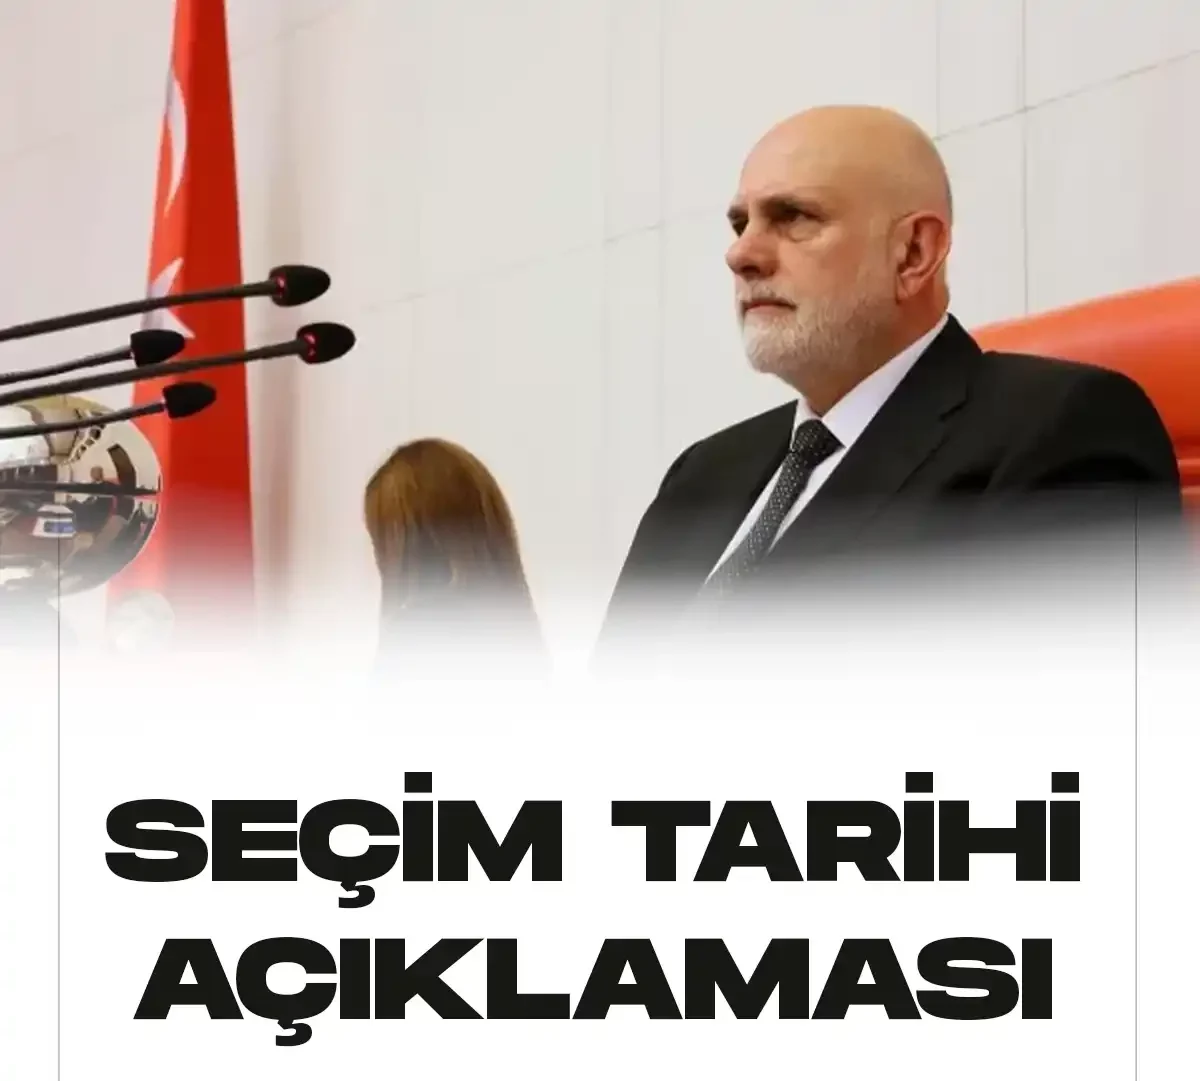 TBMM Başkanvekili Süreyya Sadi Bilgiç seçim tarihi açıklaması yaptı.